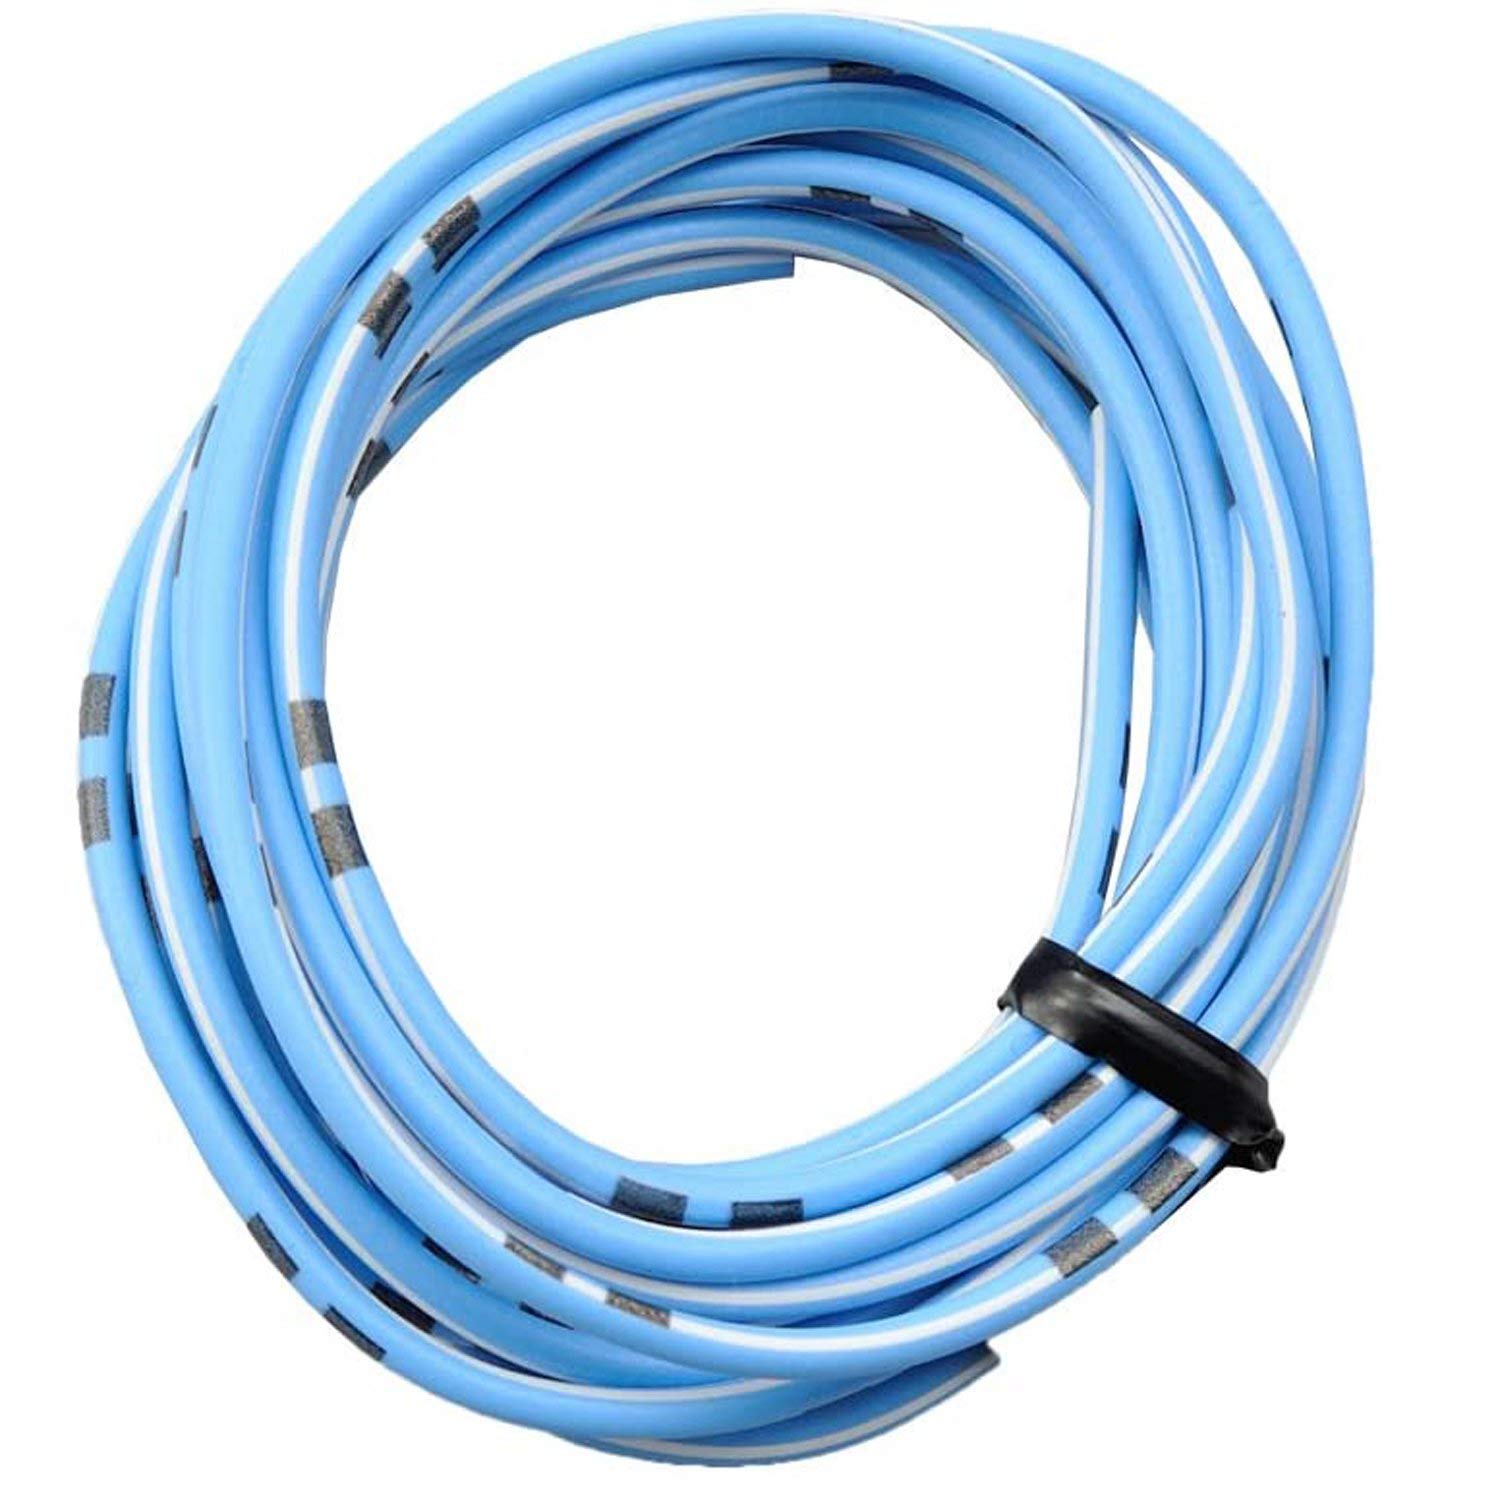 DAYTONA farbiges Kabel AWG18 0.75qmm, 2 Meter, hellblau/weiß von Daytona